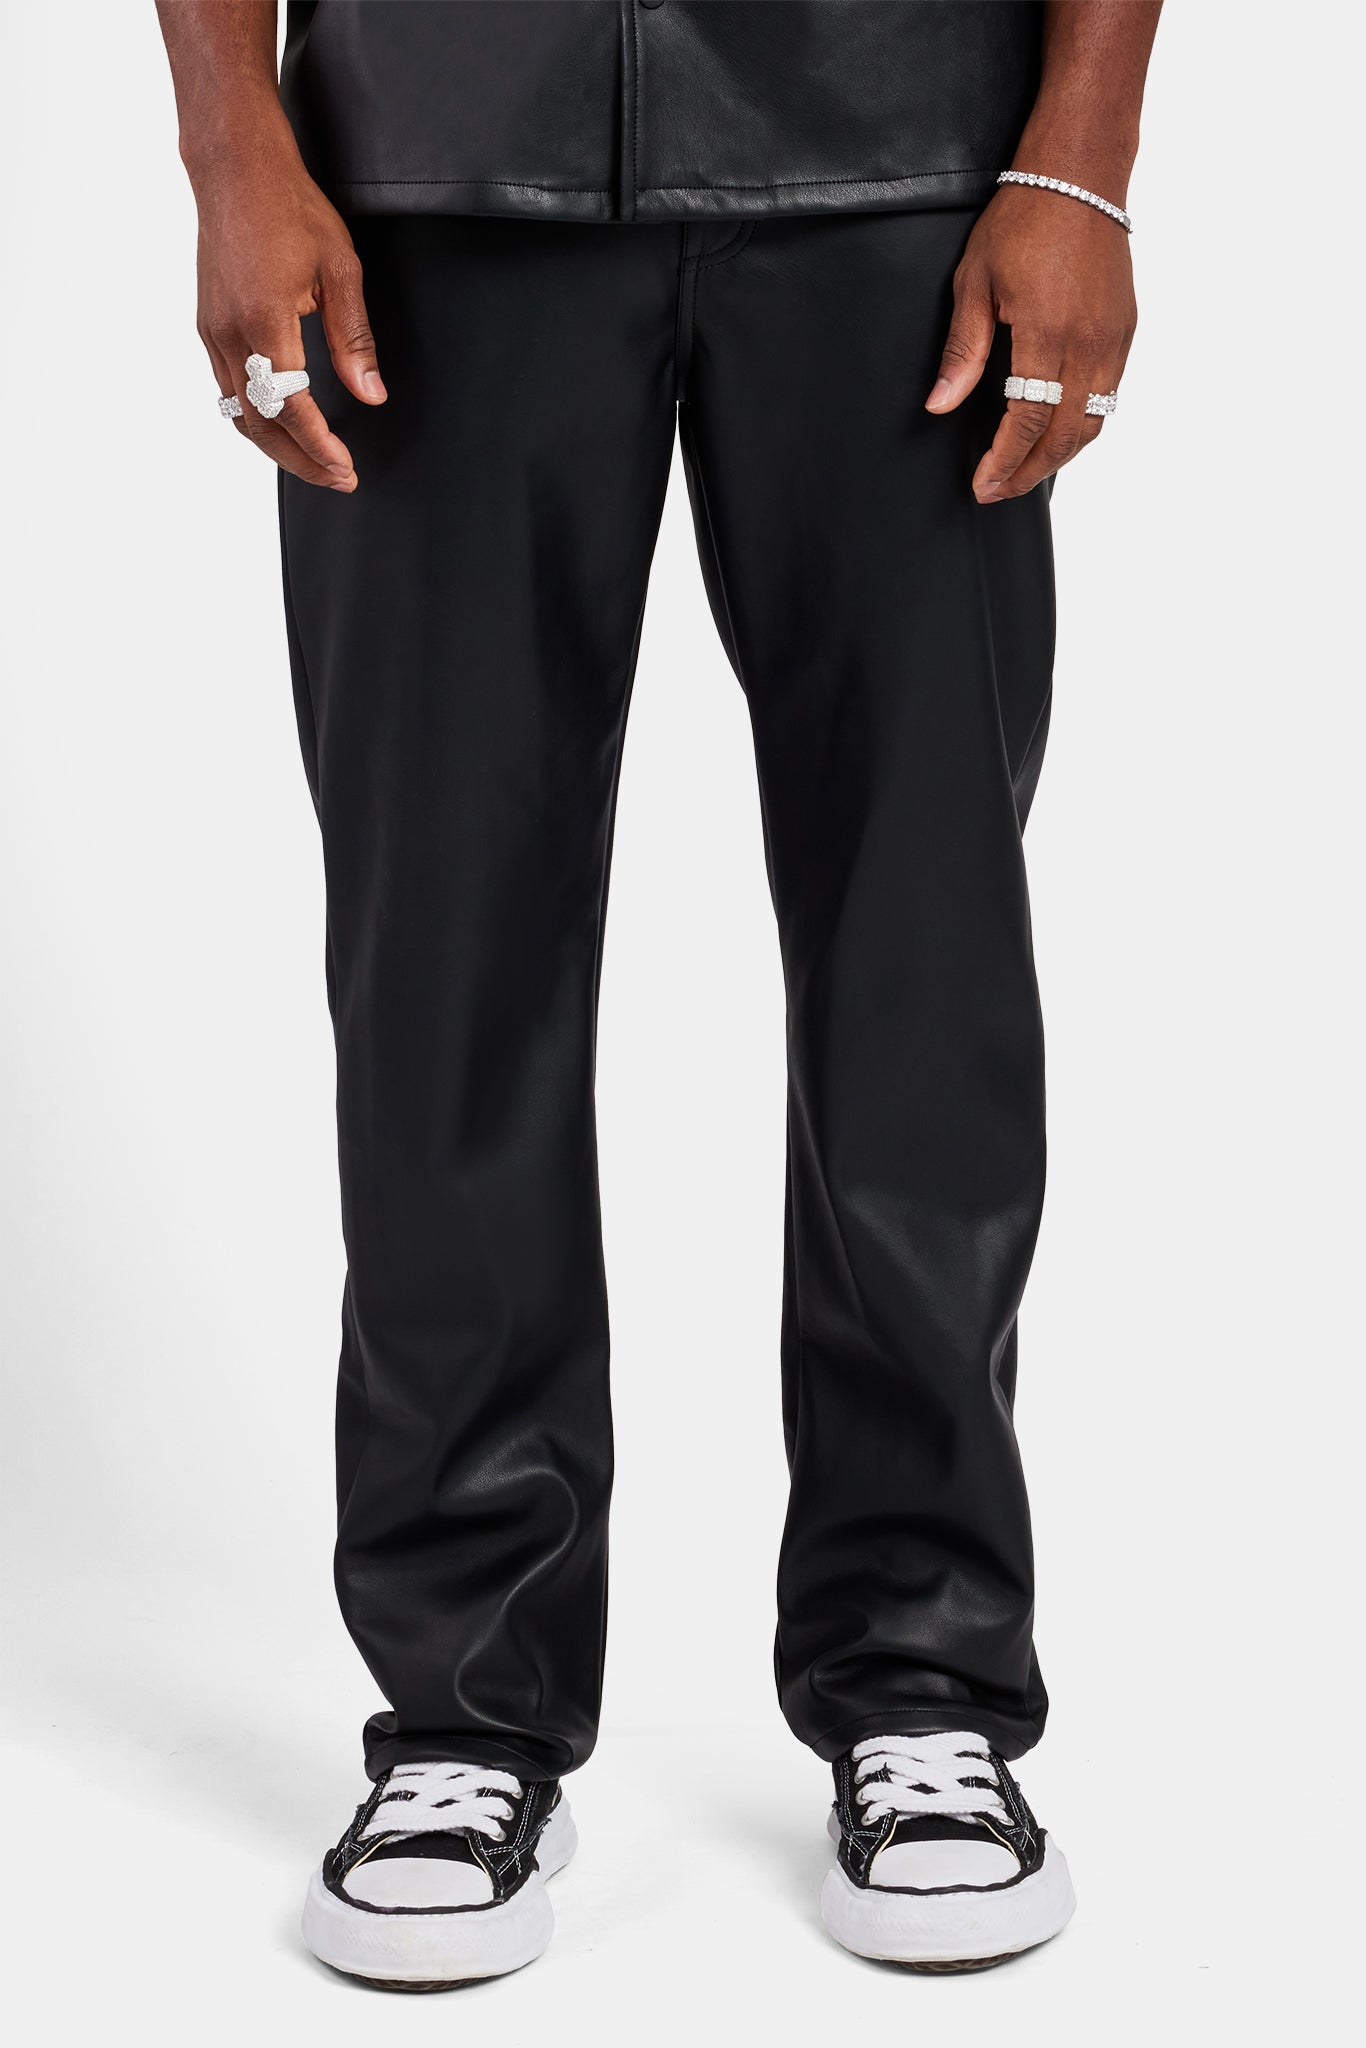 PU Trouser - Black | Mens Bottoms | Shop Trousers at CERNUCCI.COM ...